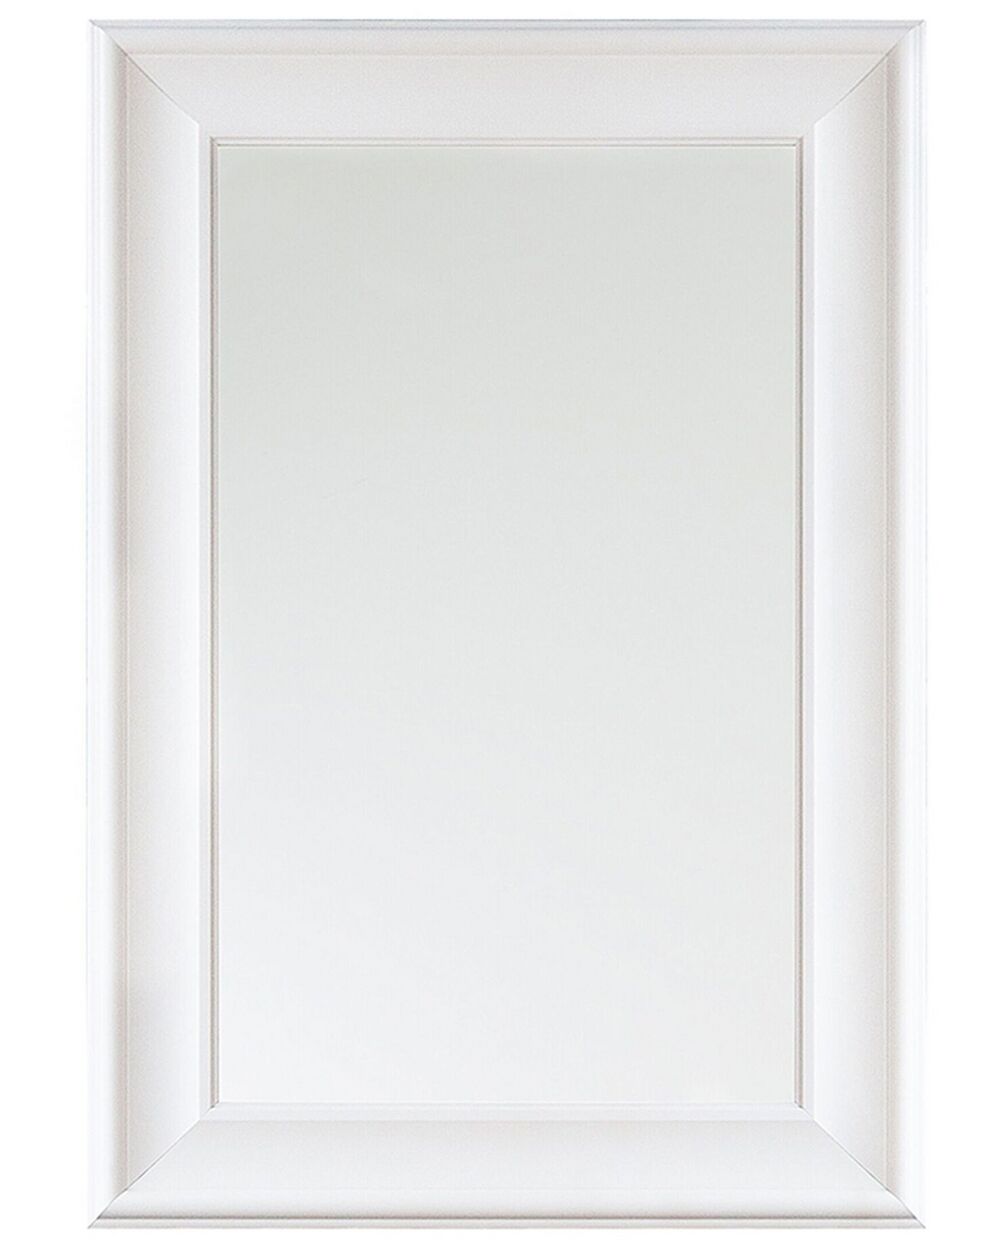 Specchio con cornice decorativa gigli bianca